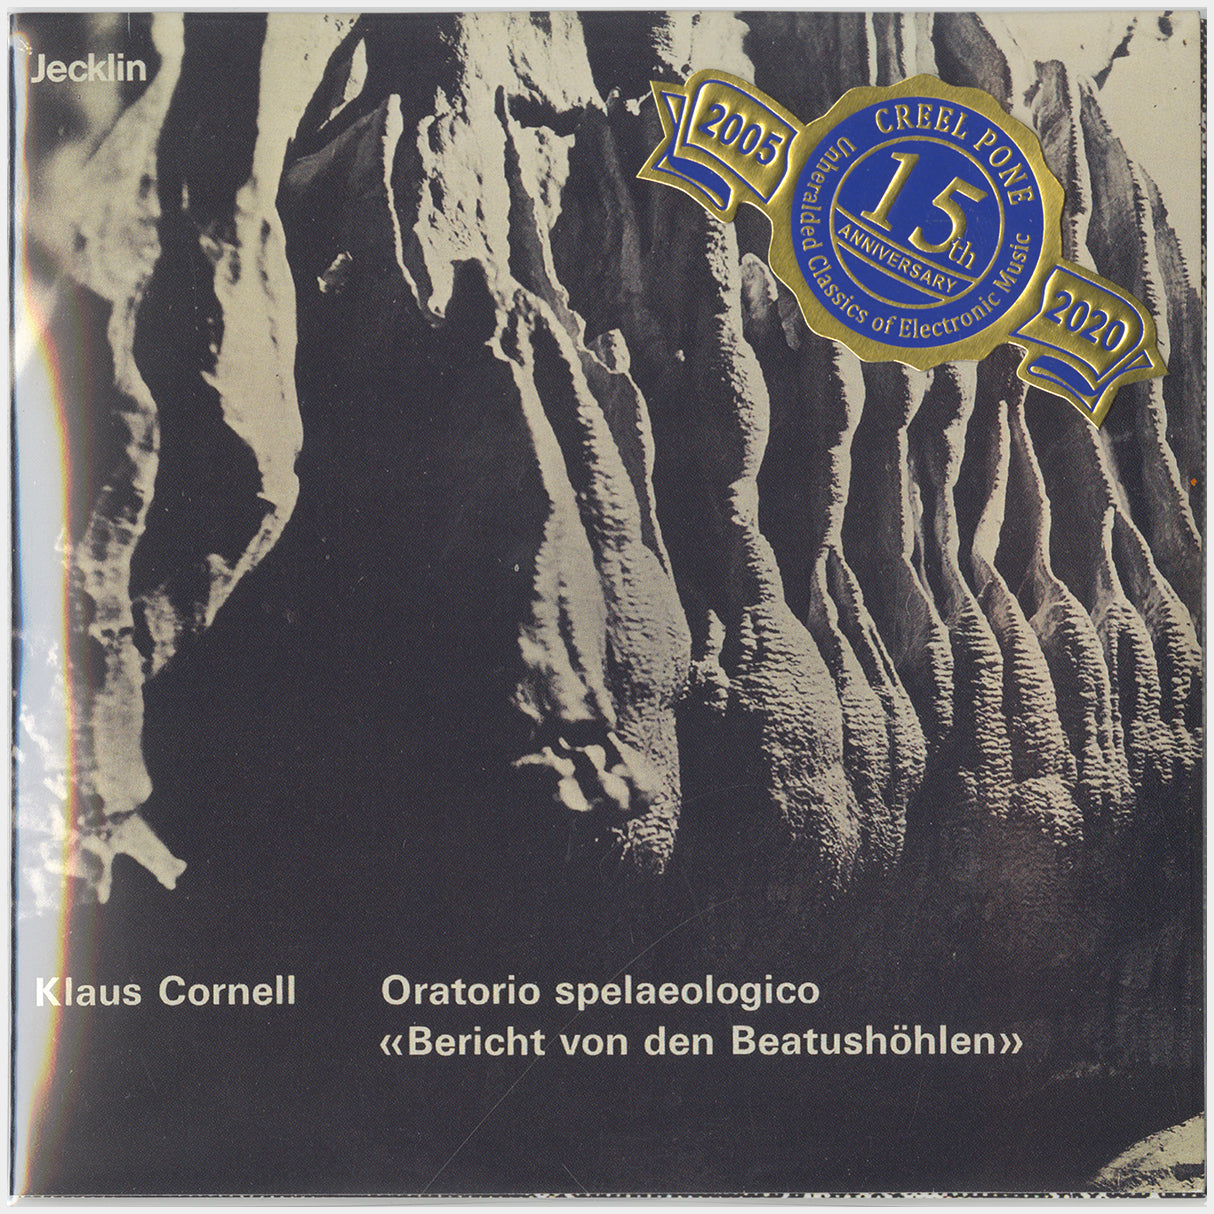 [CP 000.38 CD] Klaus Cornell, Open Music Group; Oratorio Spelaeologico, «Bericht Von Den Beatushöhlen», Die Spiegel